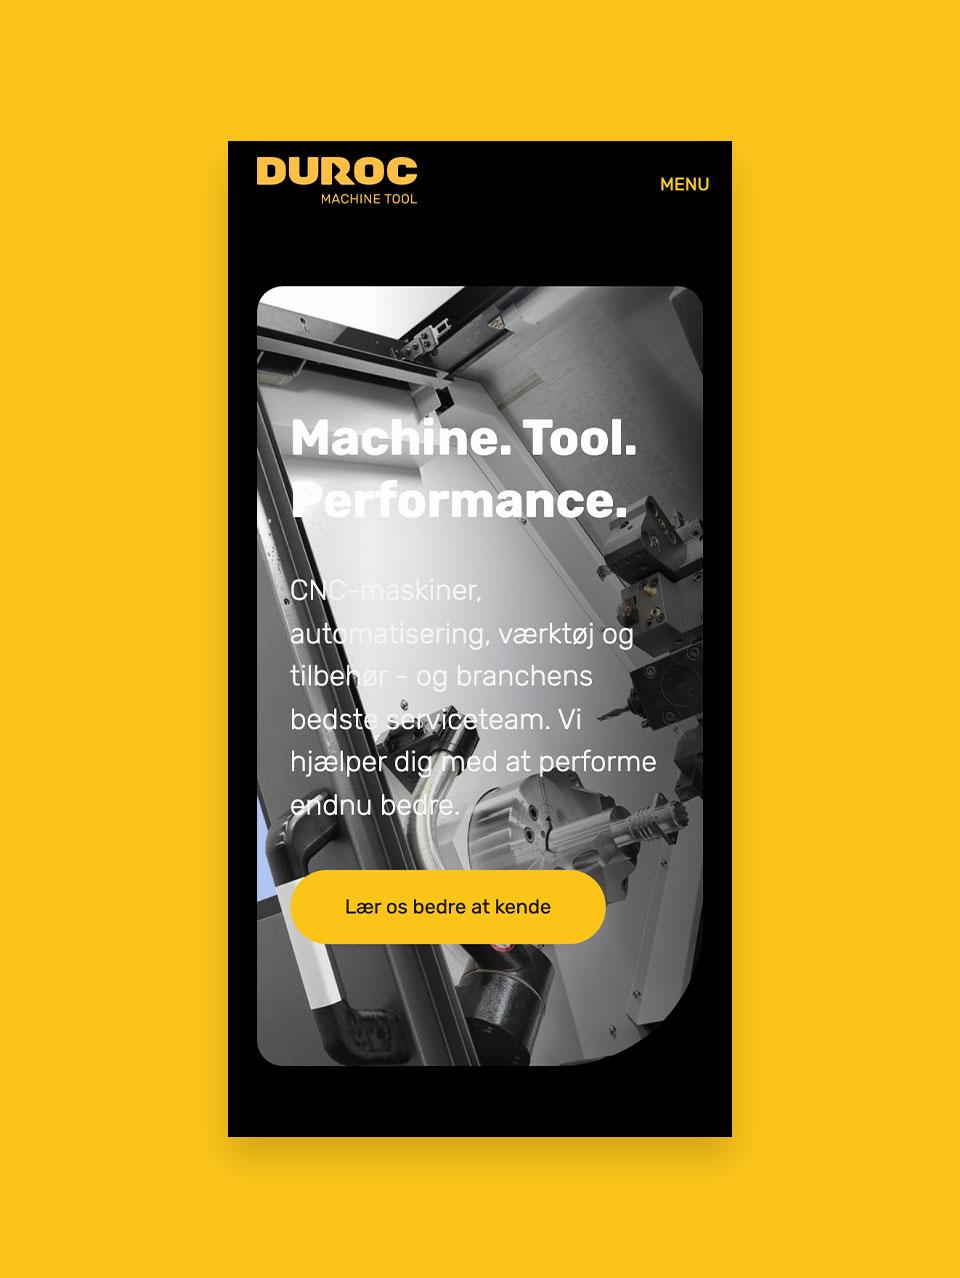 Mobilvisning af forsiden på Durocs nye hjemmeside